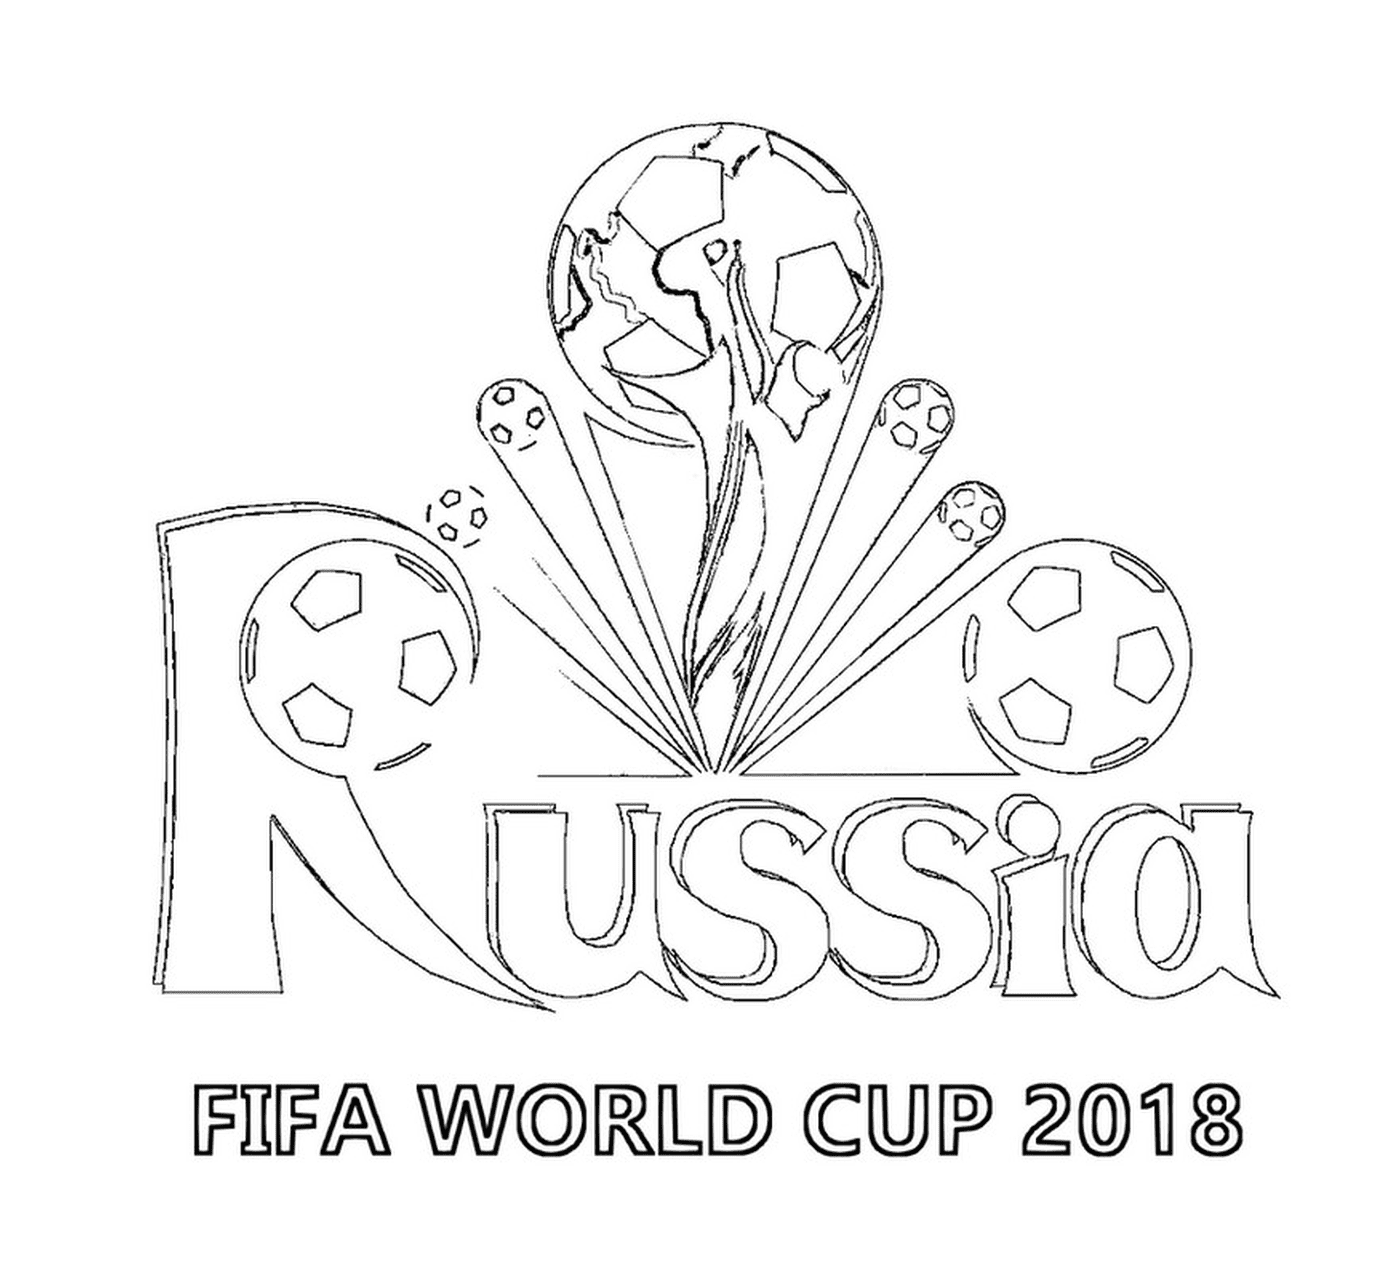  كأس العالم لكأس العالم في عام 2018، شعار 